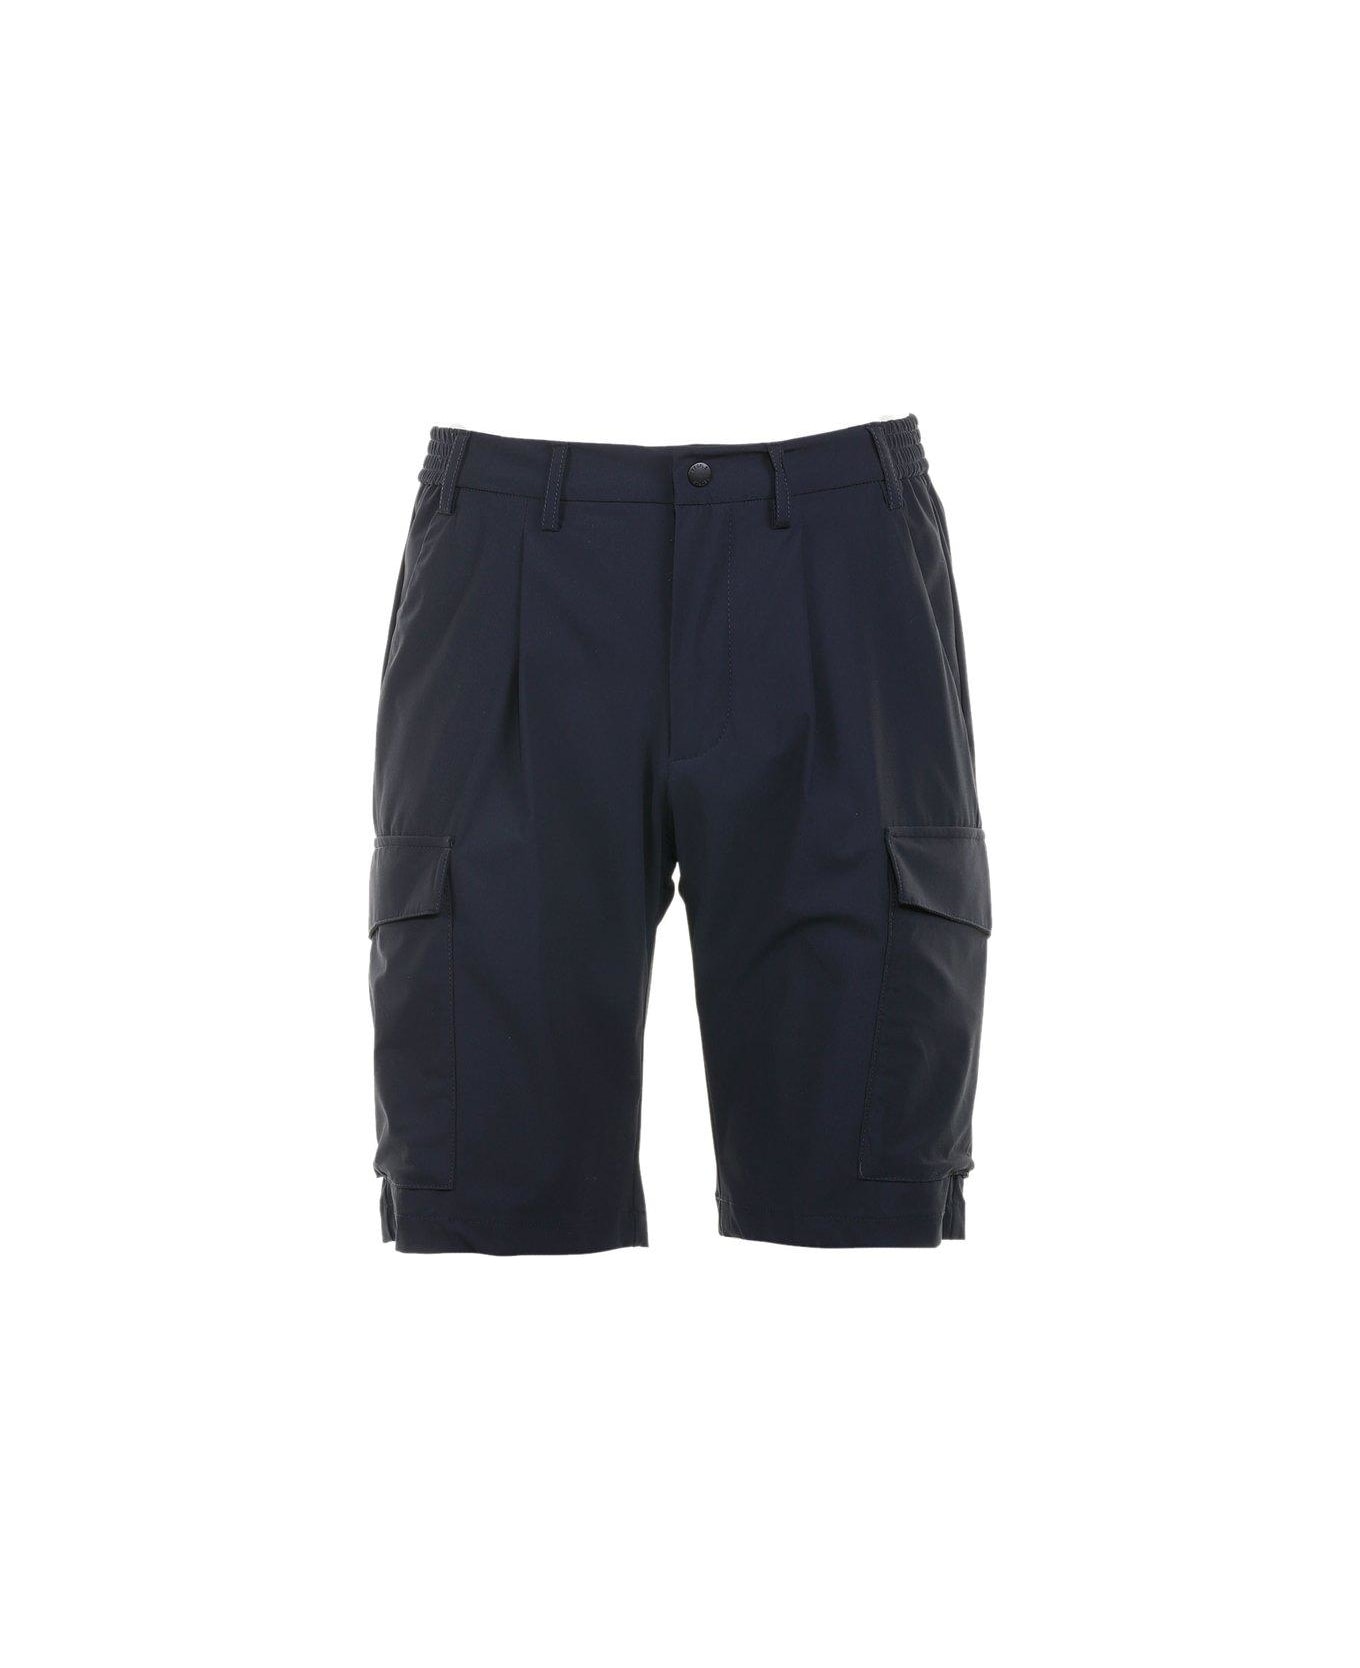 People Of Shibuya Pleat Detailed Bermuda Shorts - Navy Blue